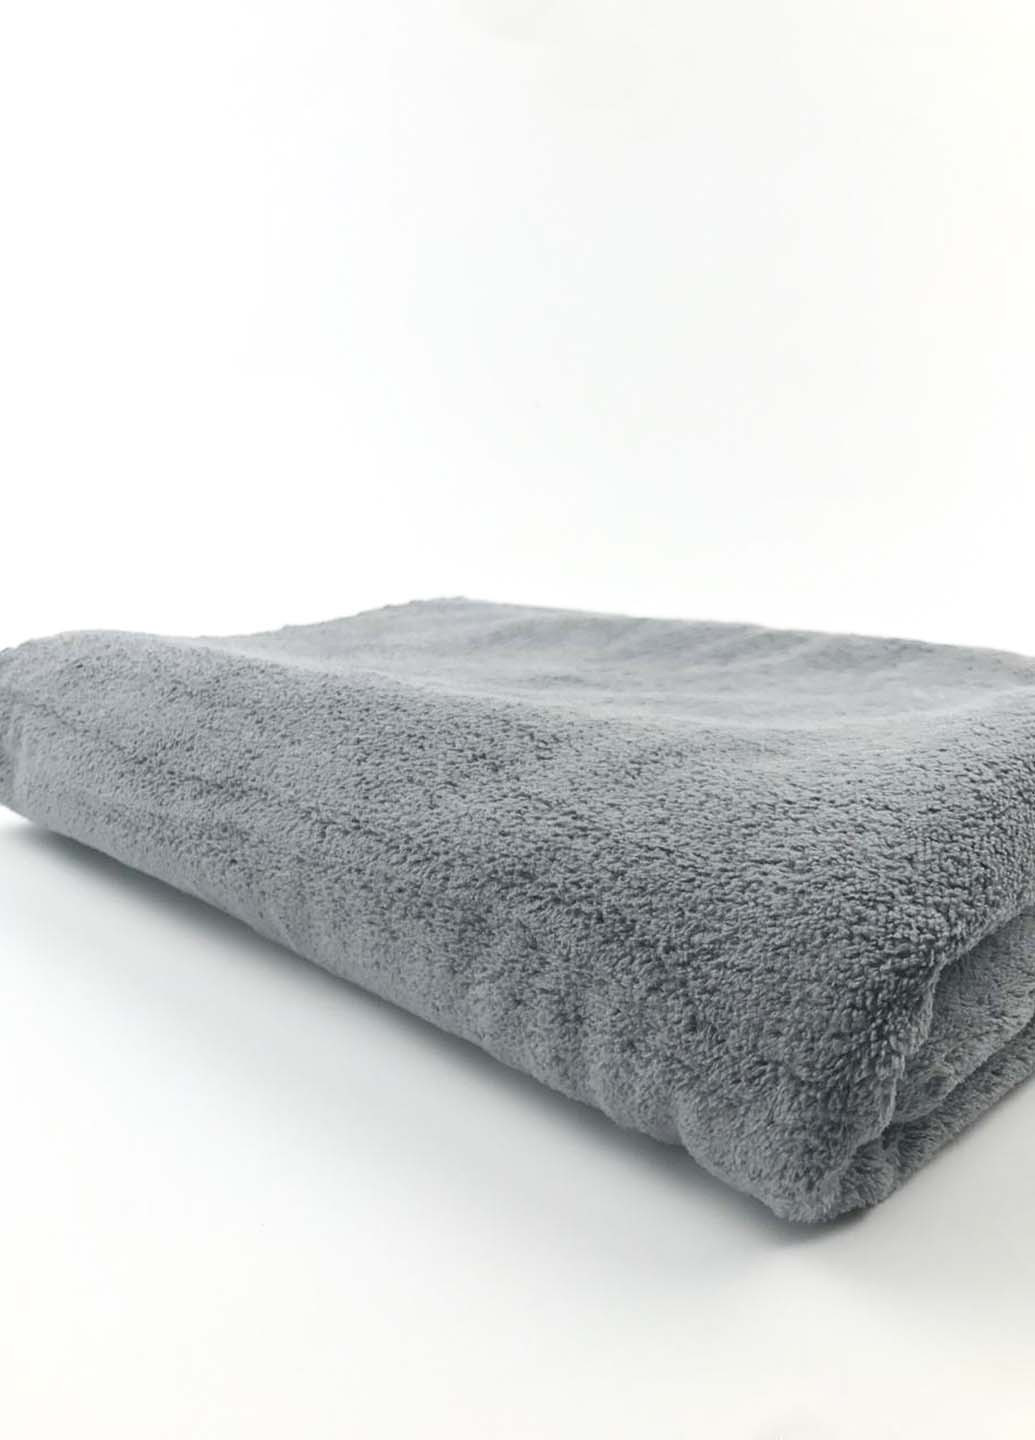 Homedec полотенце банное большое микрофибра 160х90 см однотонный серый производство - Турция